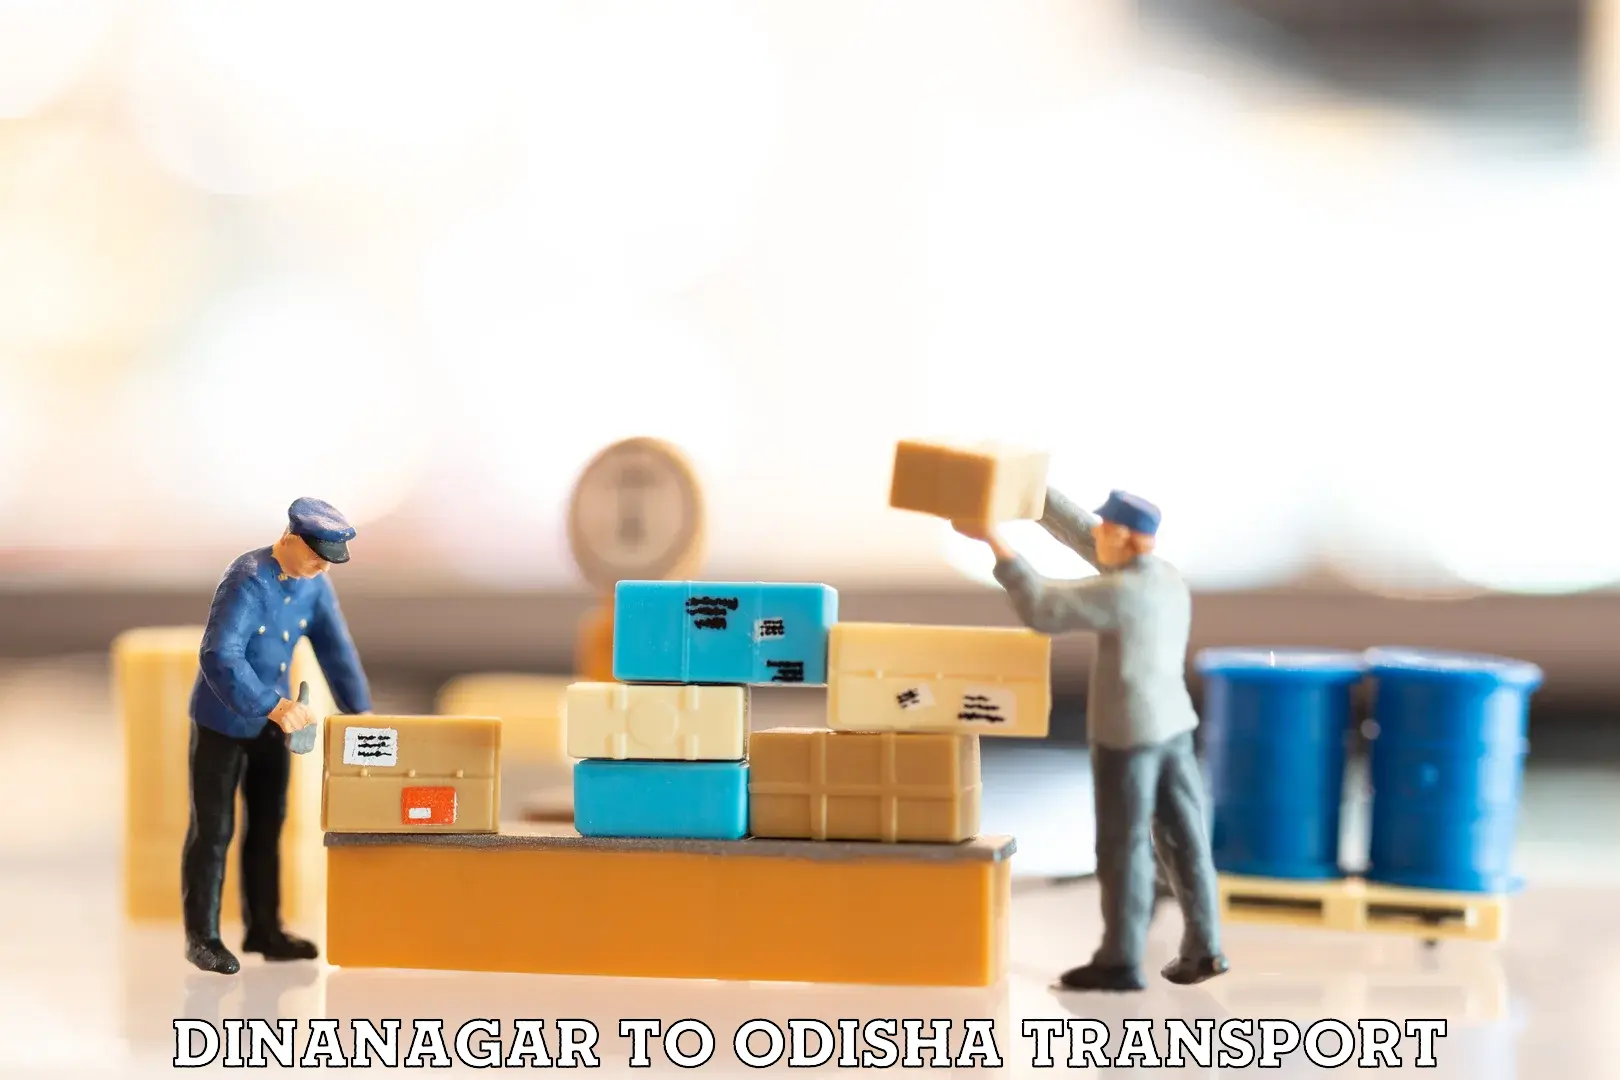 Furniture transport service Dinanagar to Joda